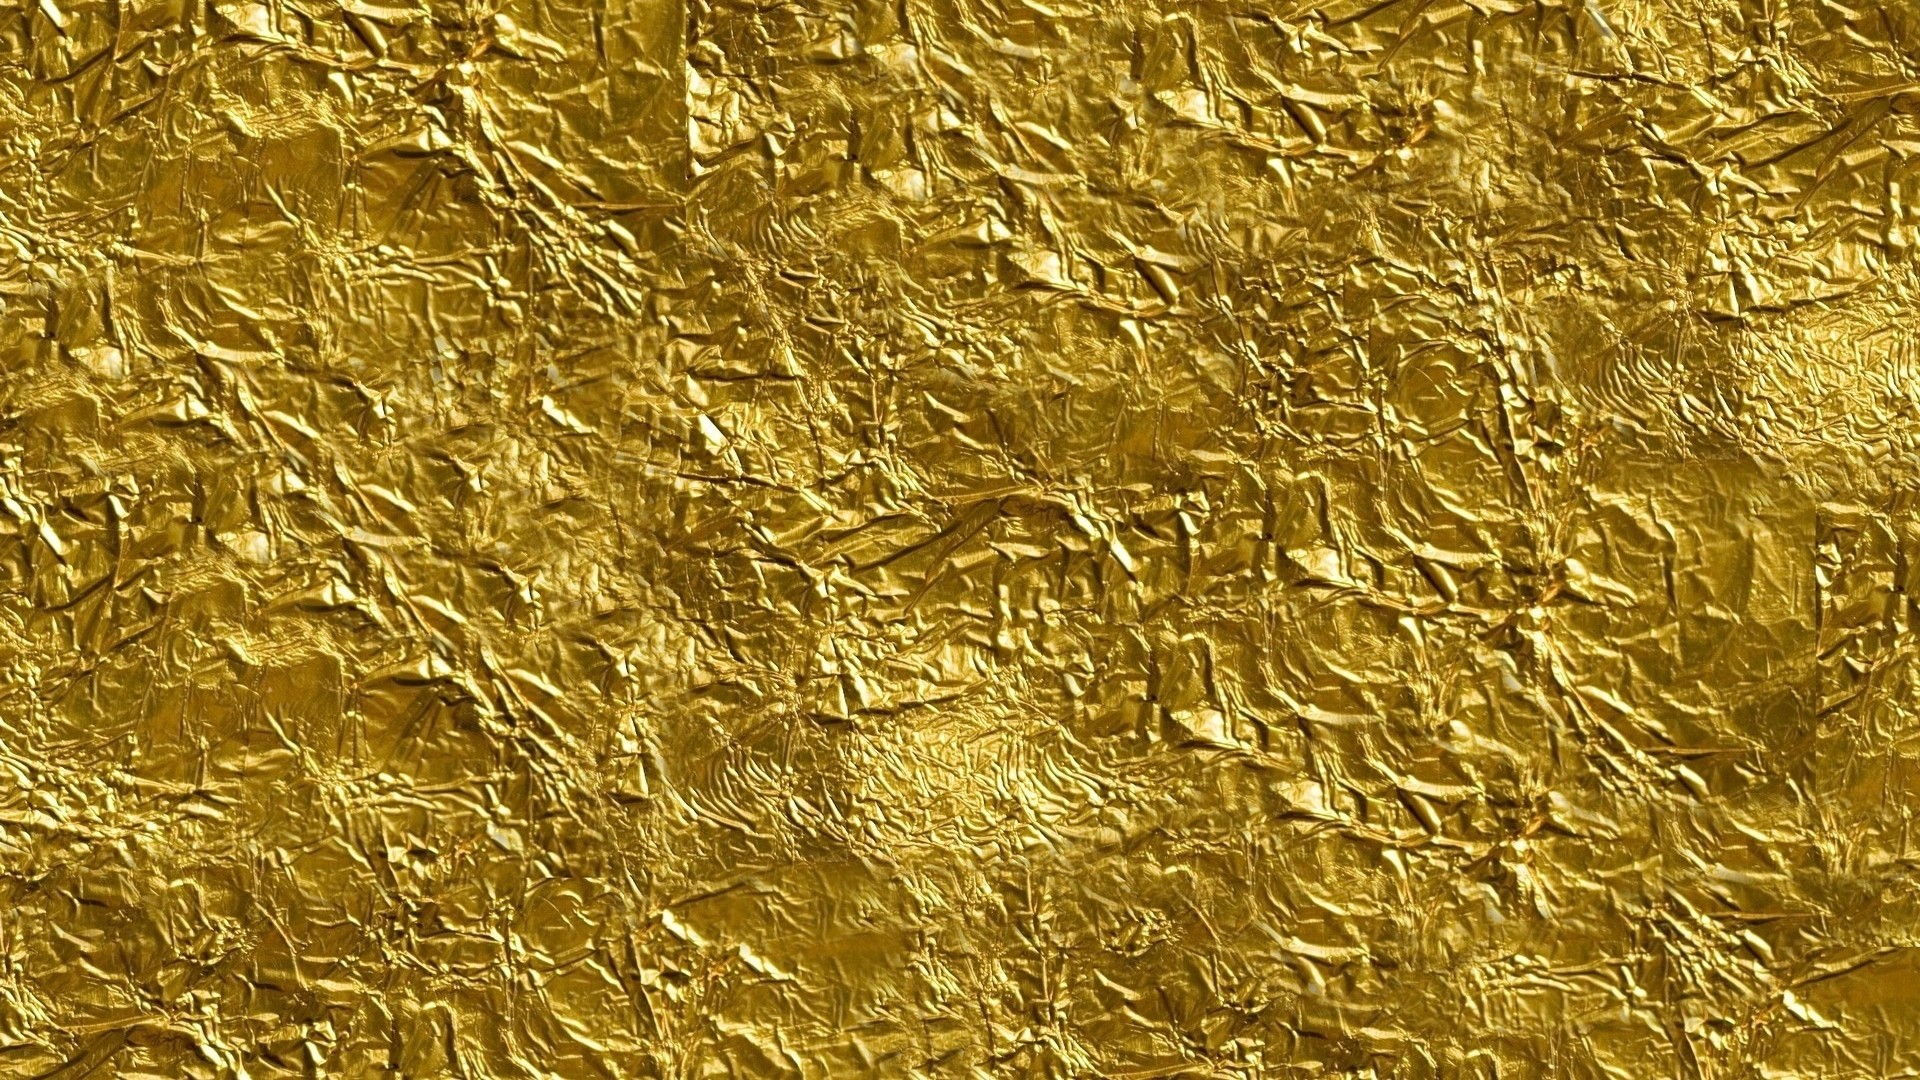 1920x1080 Gold Texture - wallpaper.